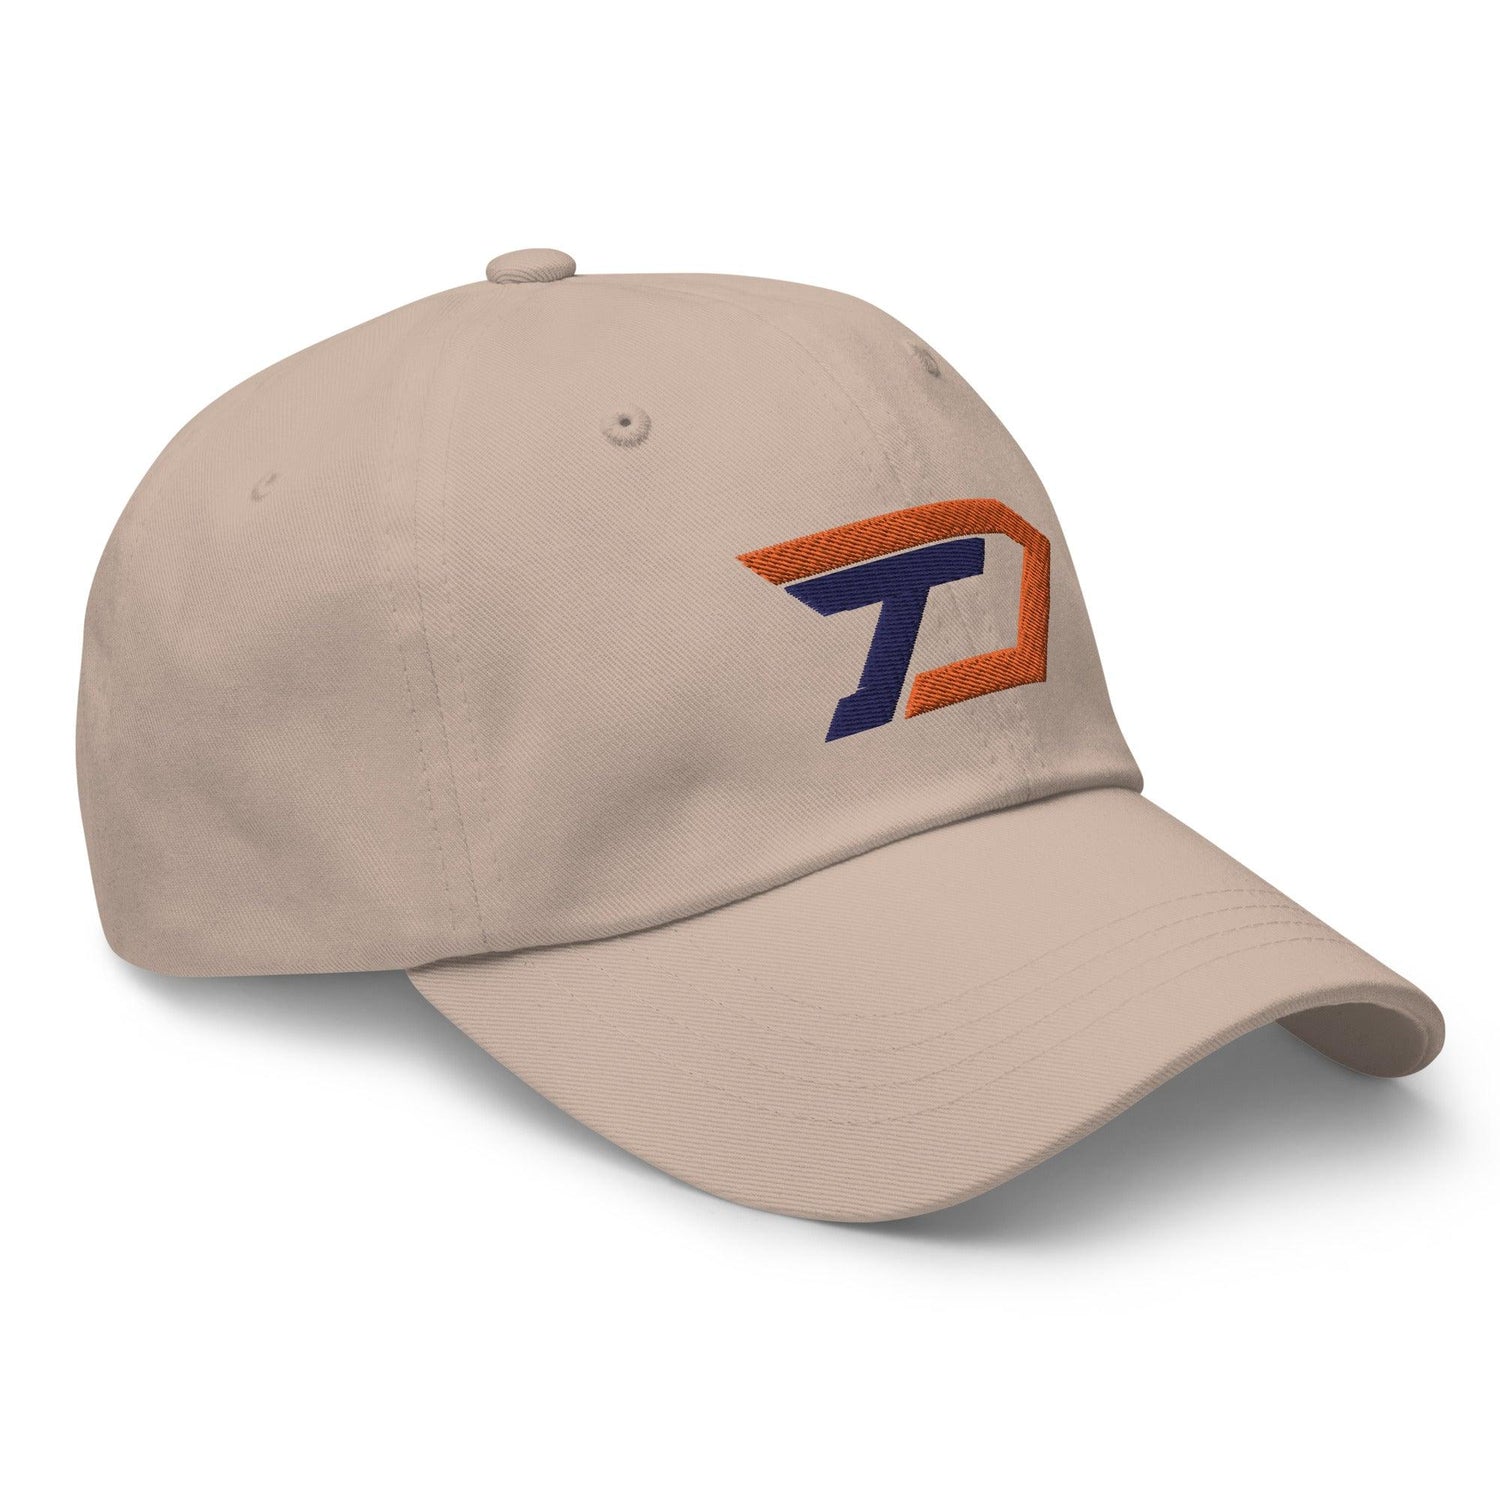 Tommy Dejuneaus “TD” hat - Fan Arch